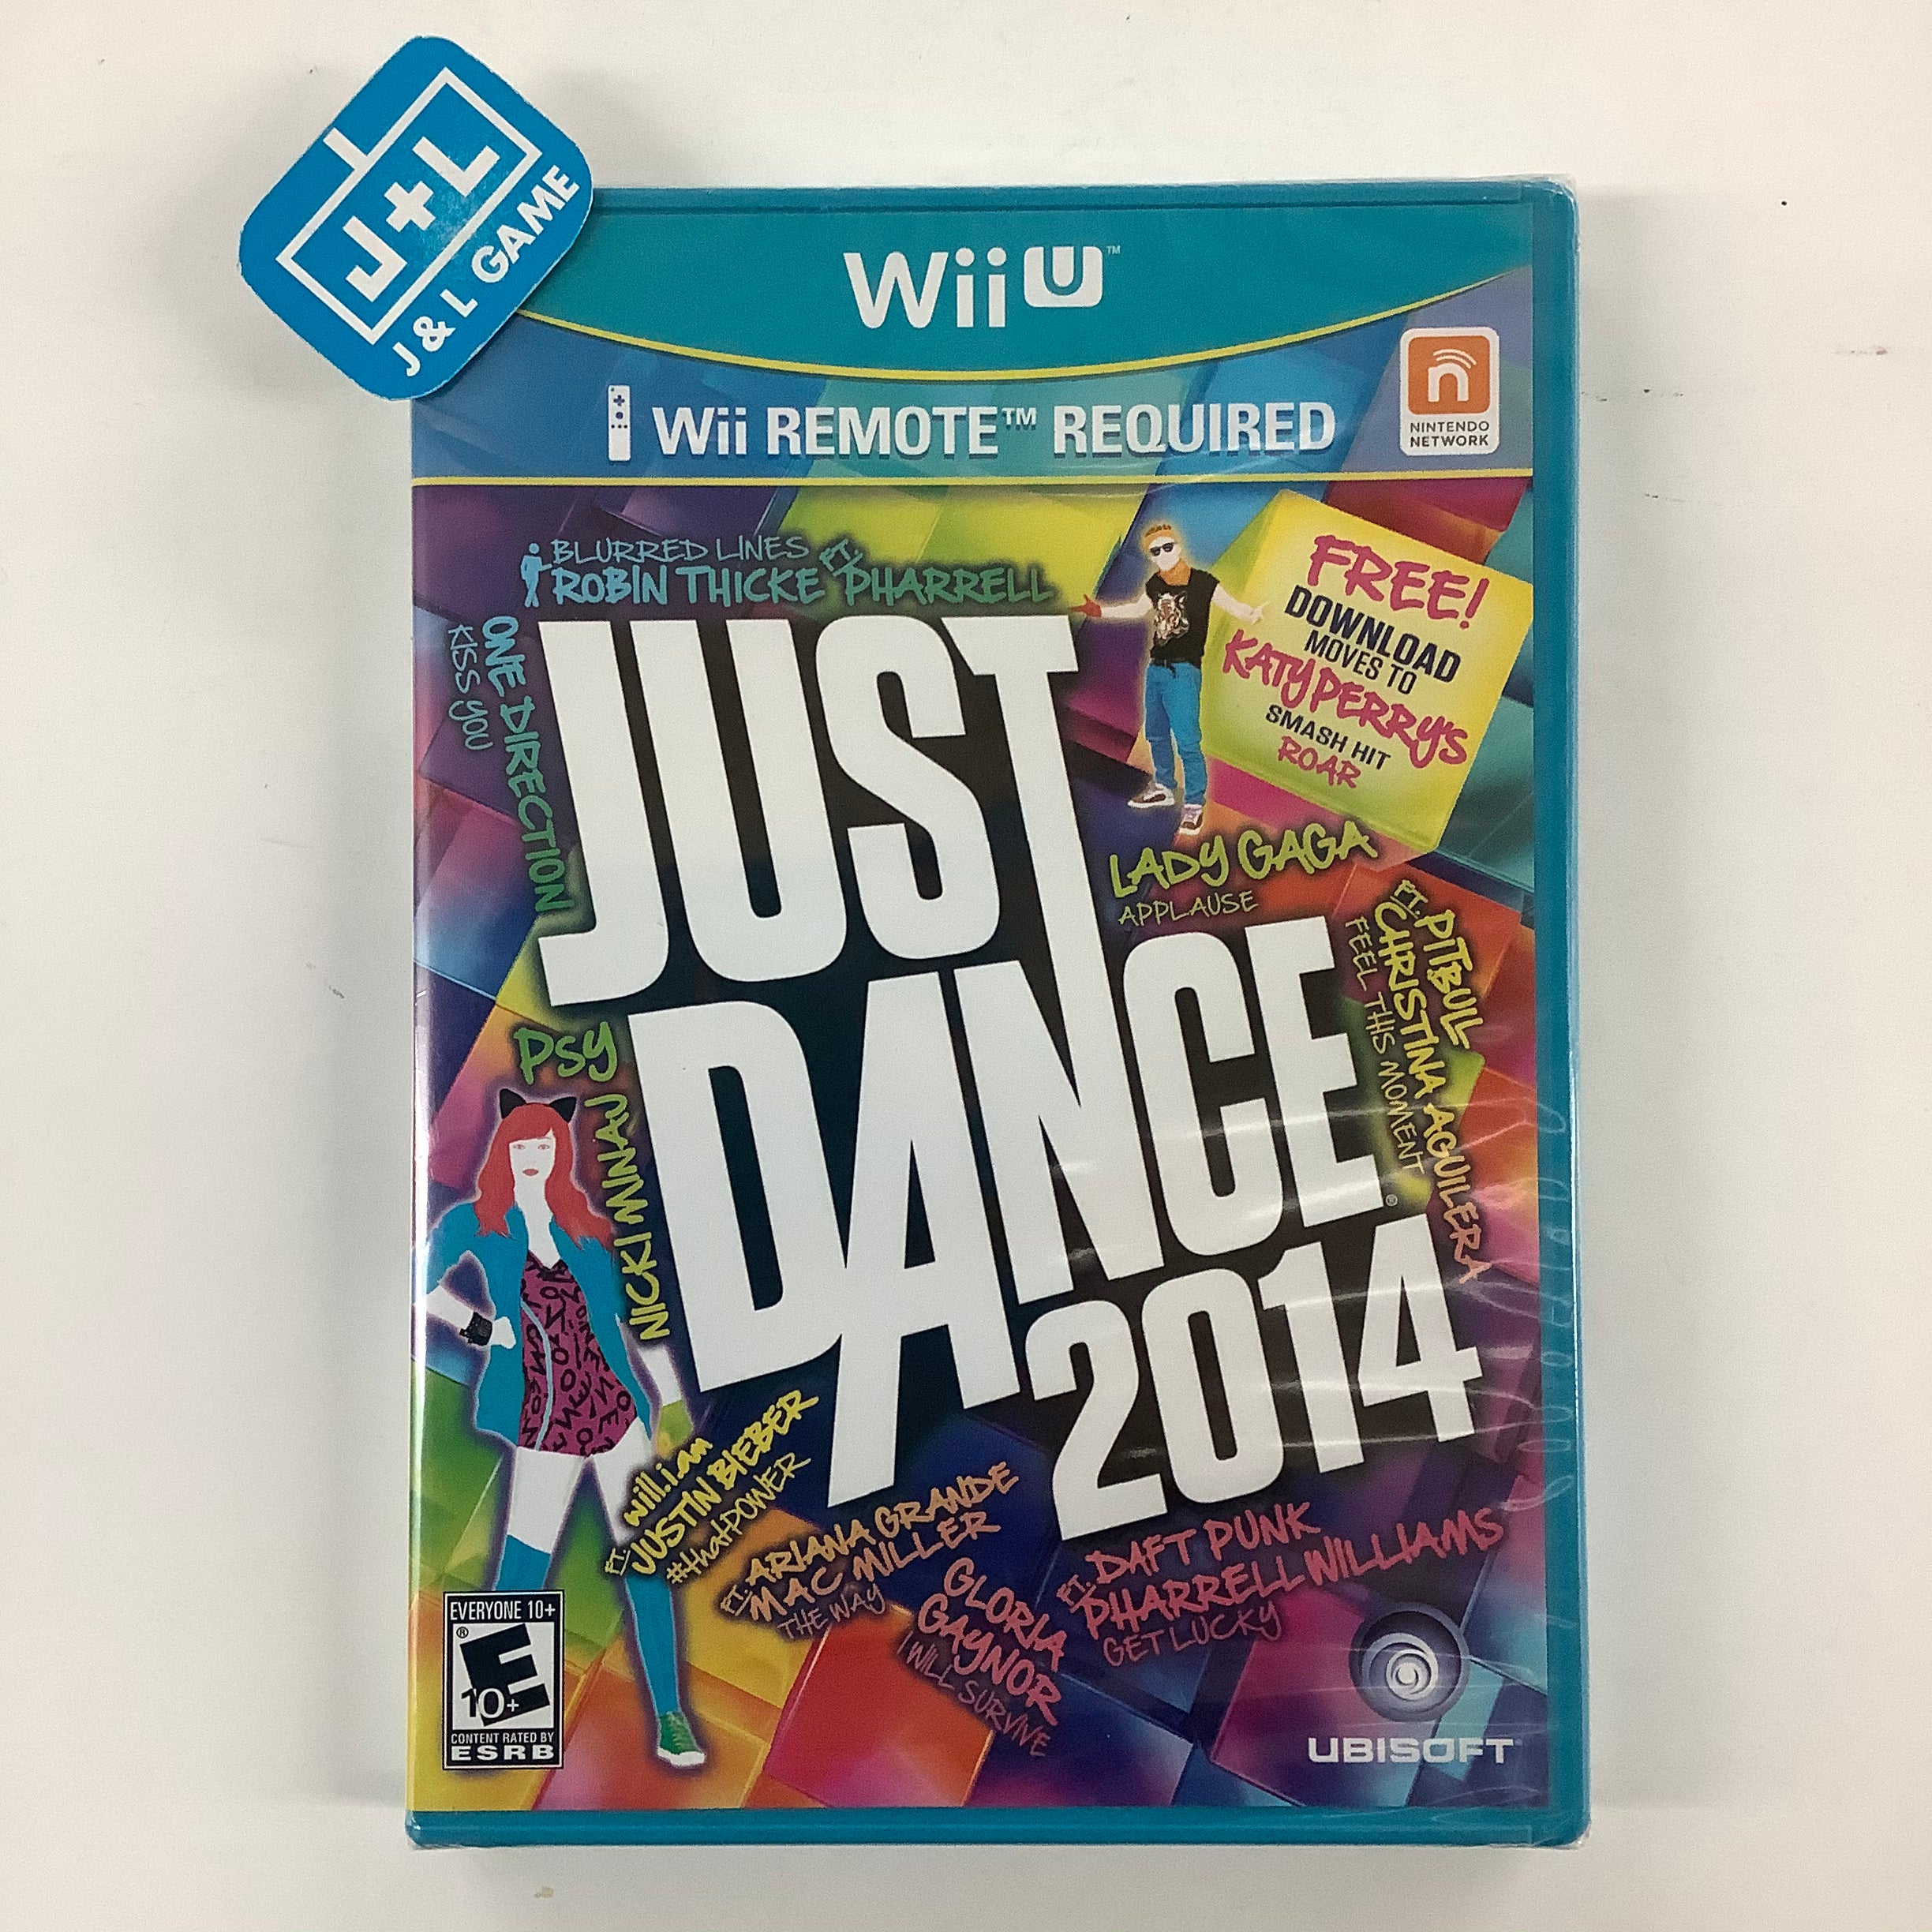 Just Dance 2014 - Nintendo Wii U Video Games Ubisoft   